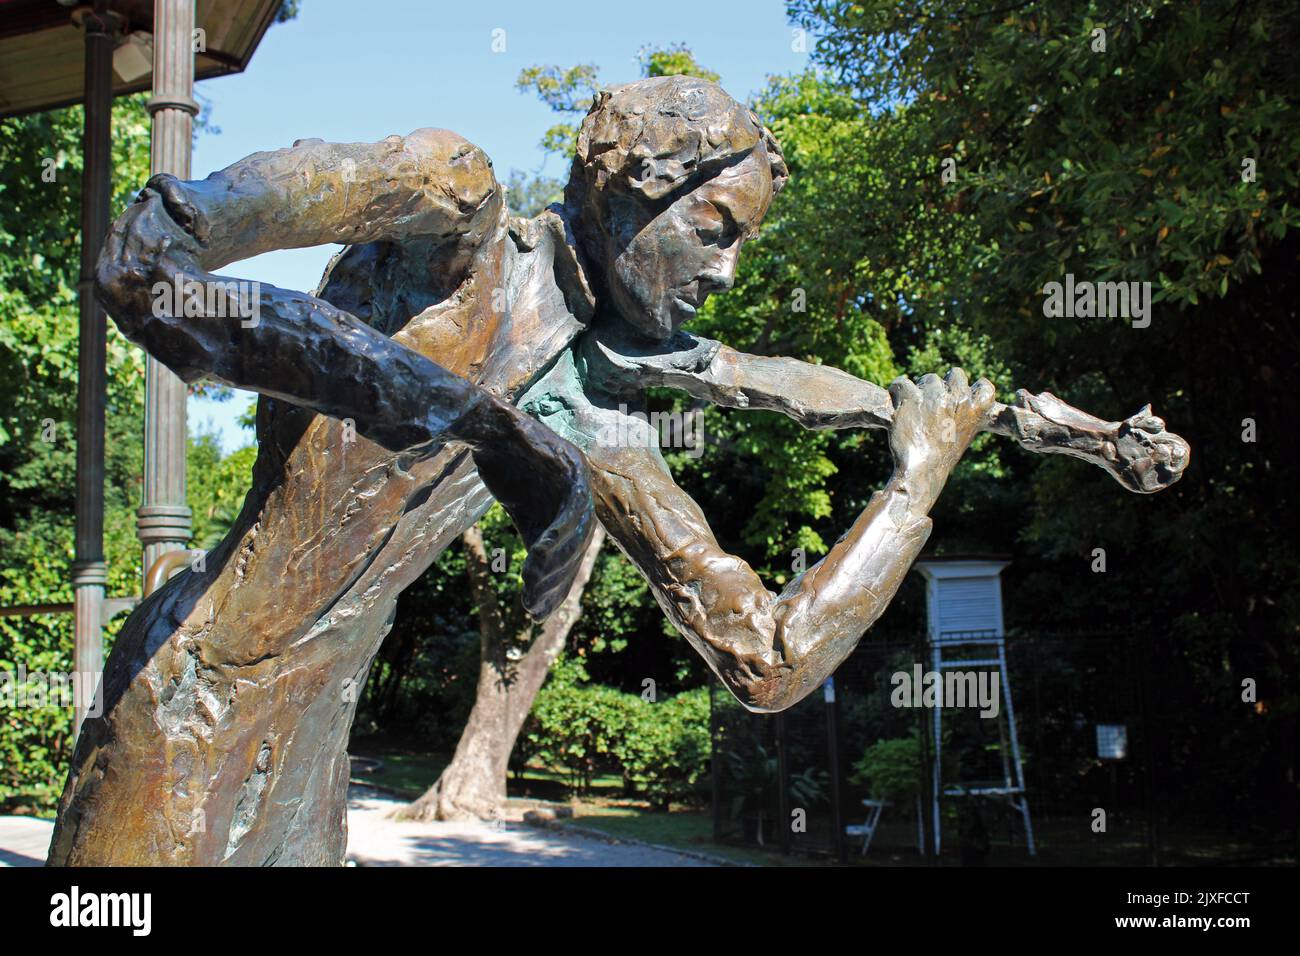 Monumentos famosos, Opatija, el conocido parque público Angiolina, la estatua del violinista Jan Kubelik, la costa adriática, la bahía de Kvarner, Croacia Foto de stock